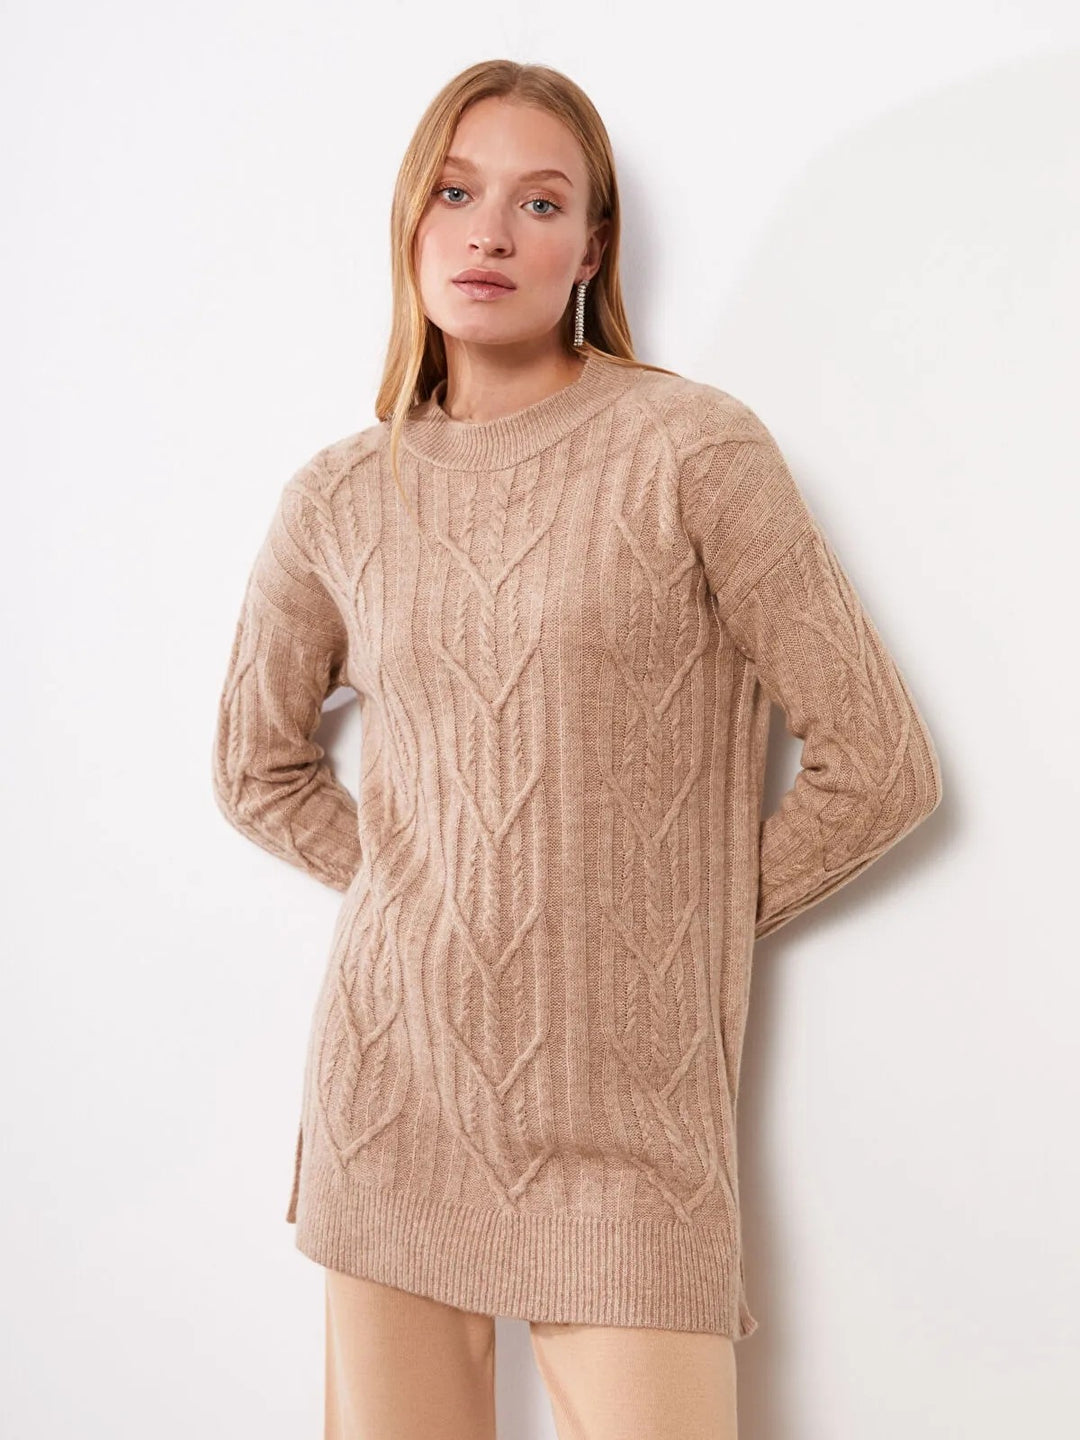 Crew Neck Self Patterned Long Sleeve Women Knitwear Sweater